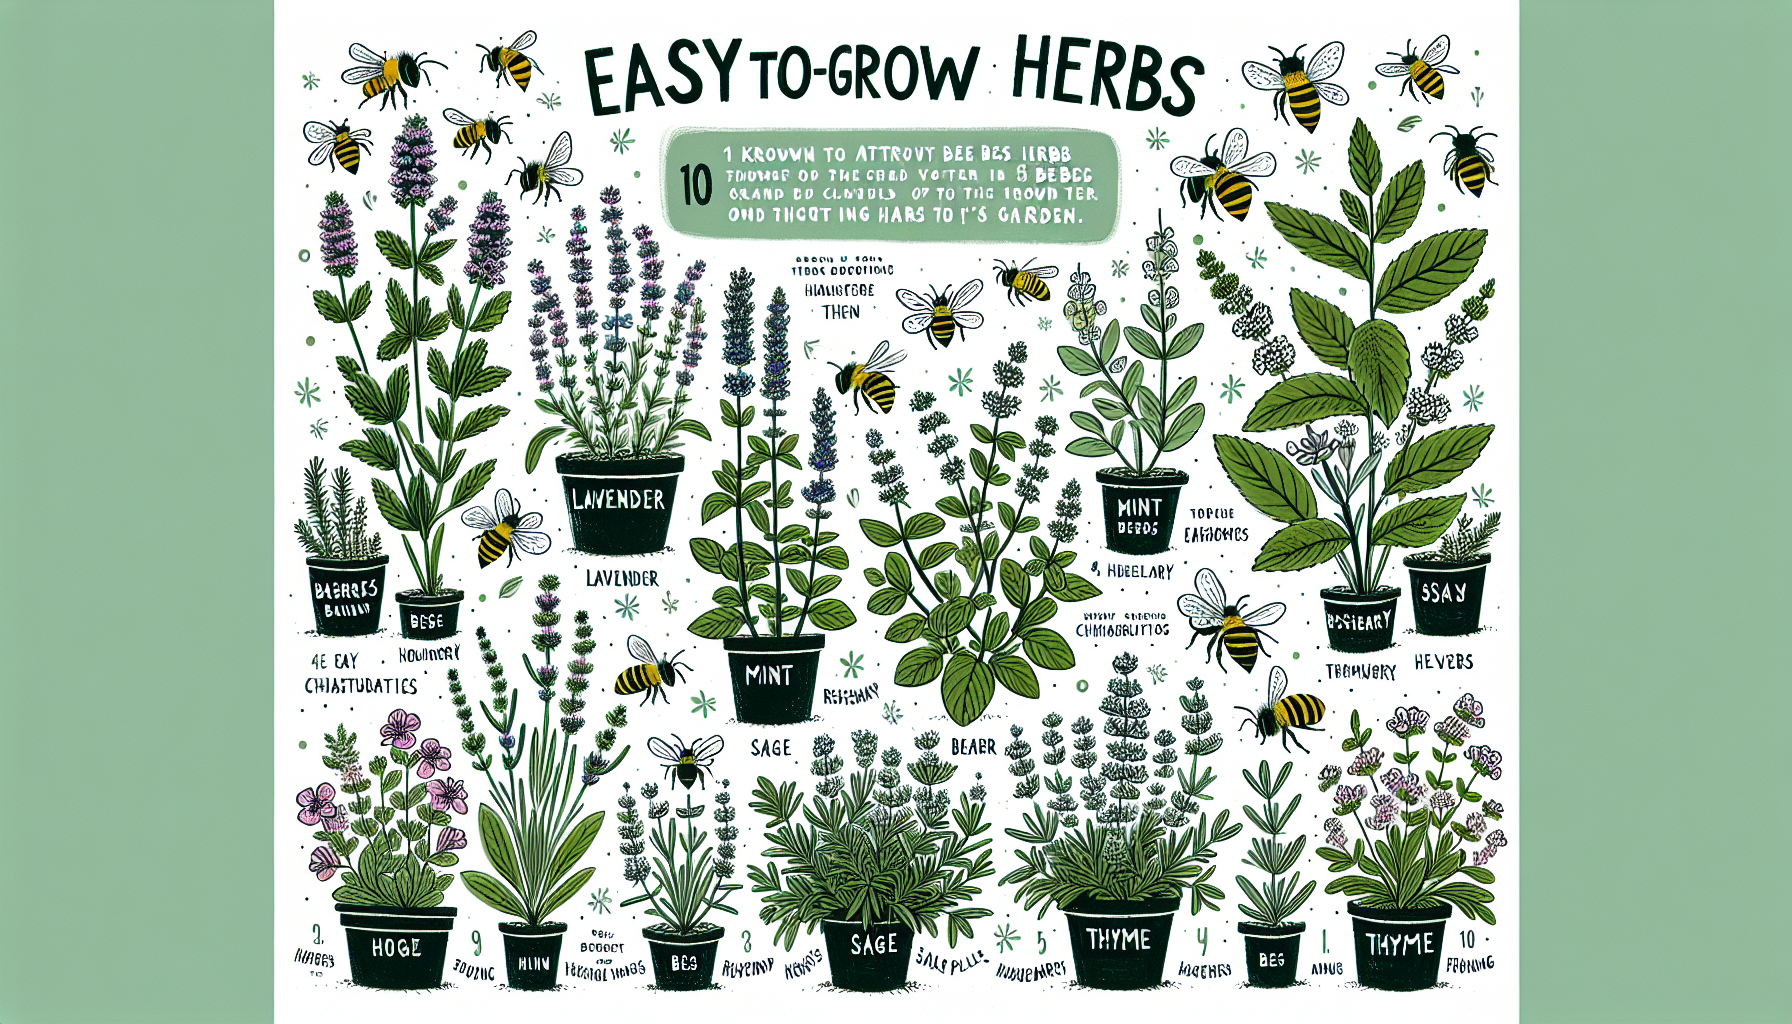 découvrez comment attirer les abeilles dans votre jardin en cultivant ces 10 herbes simples.